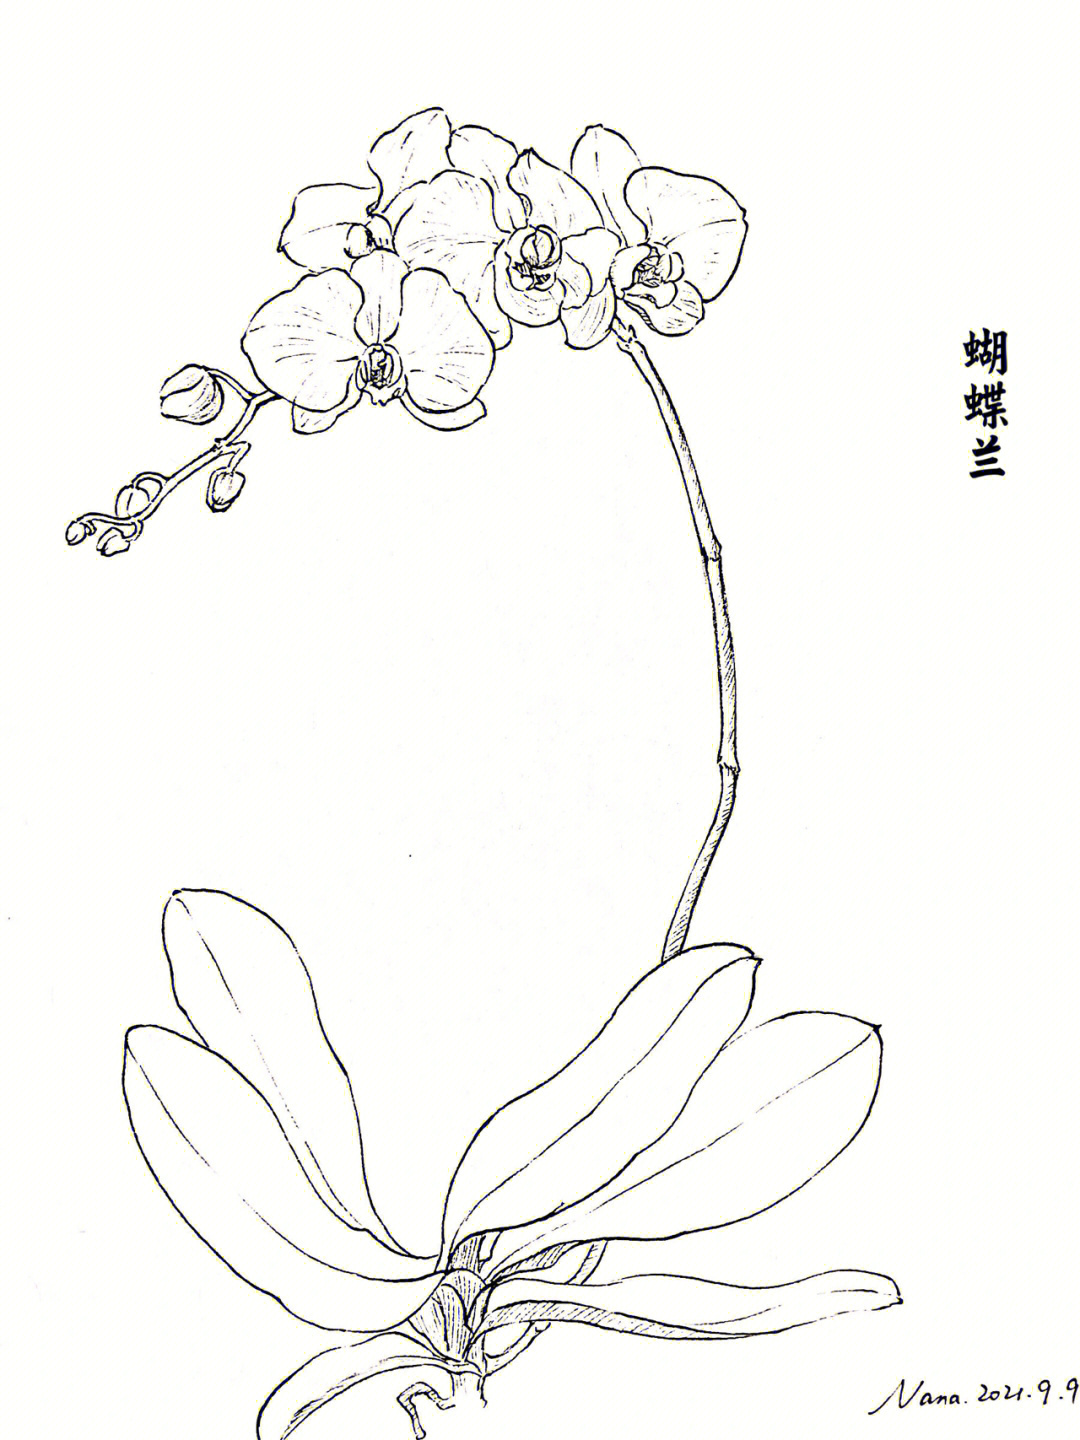 植物手绘线稿简单图片